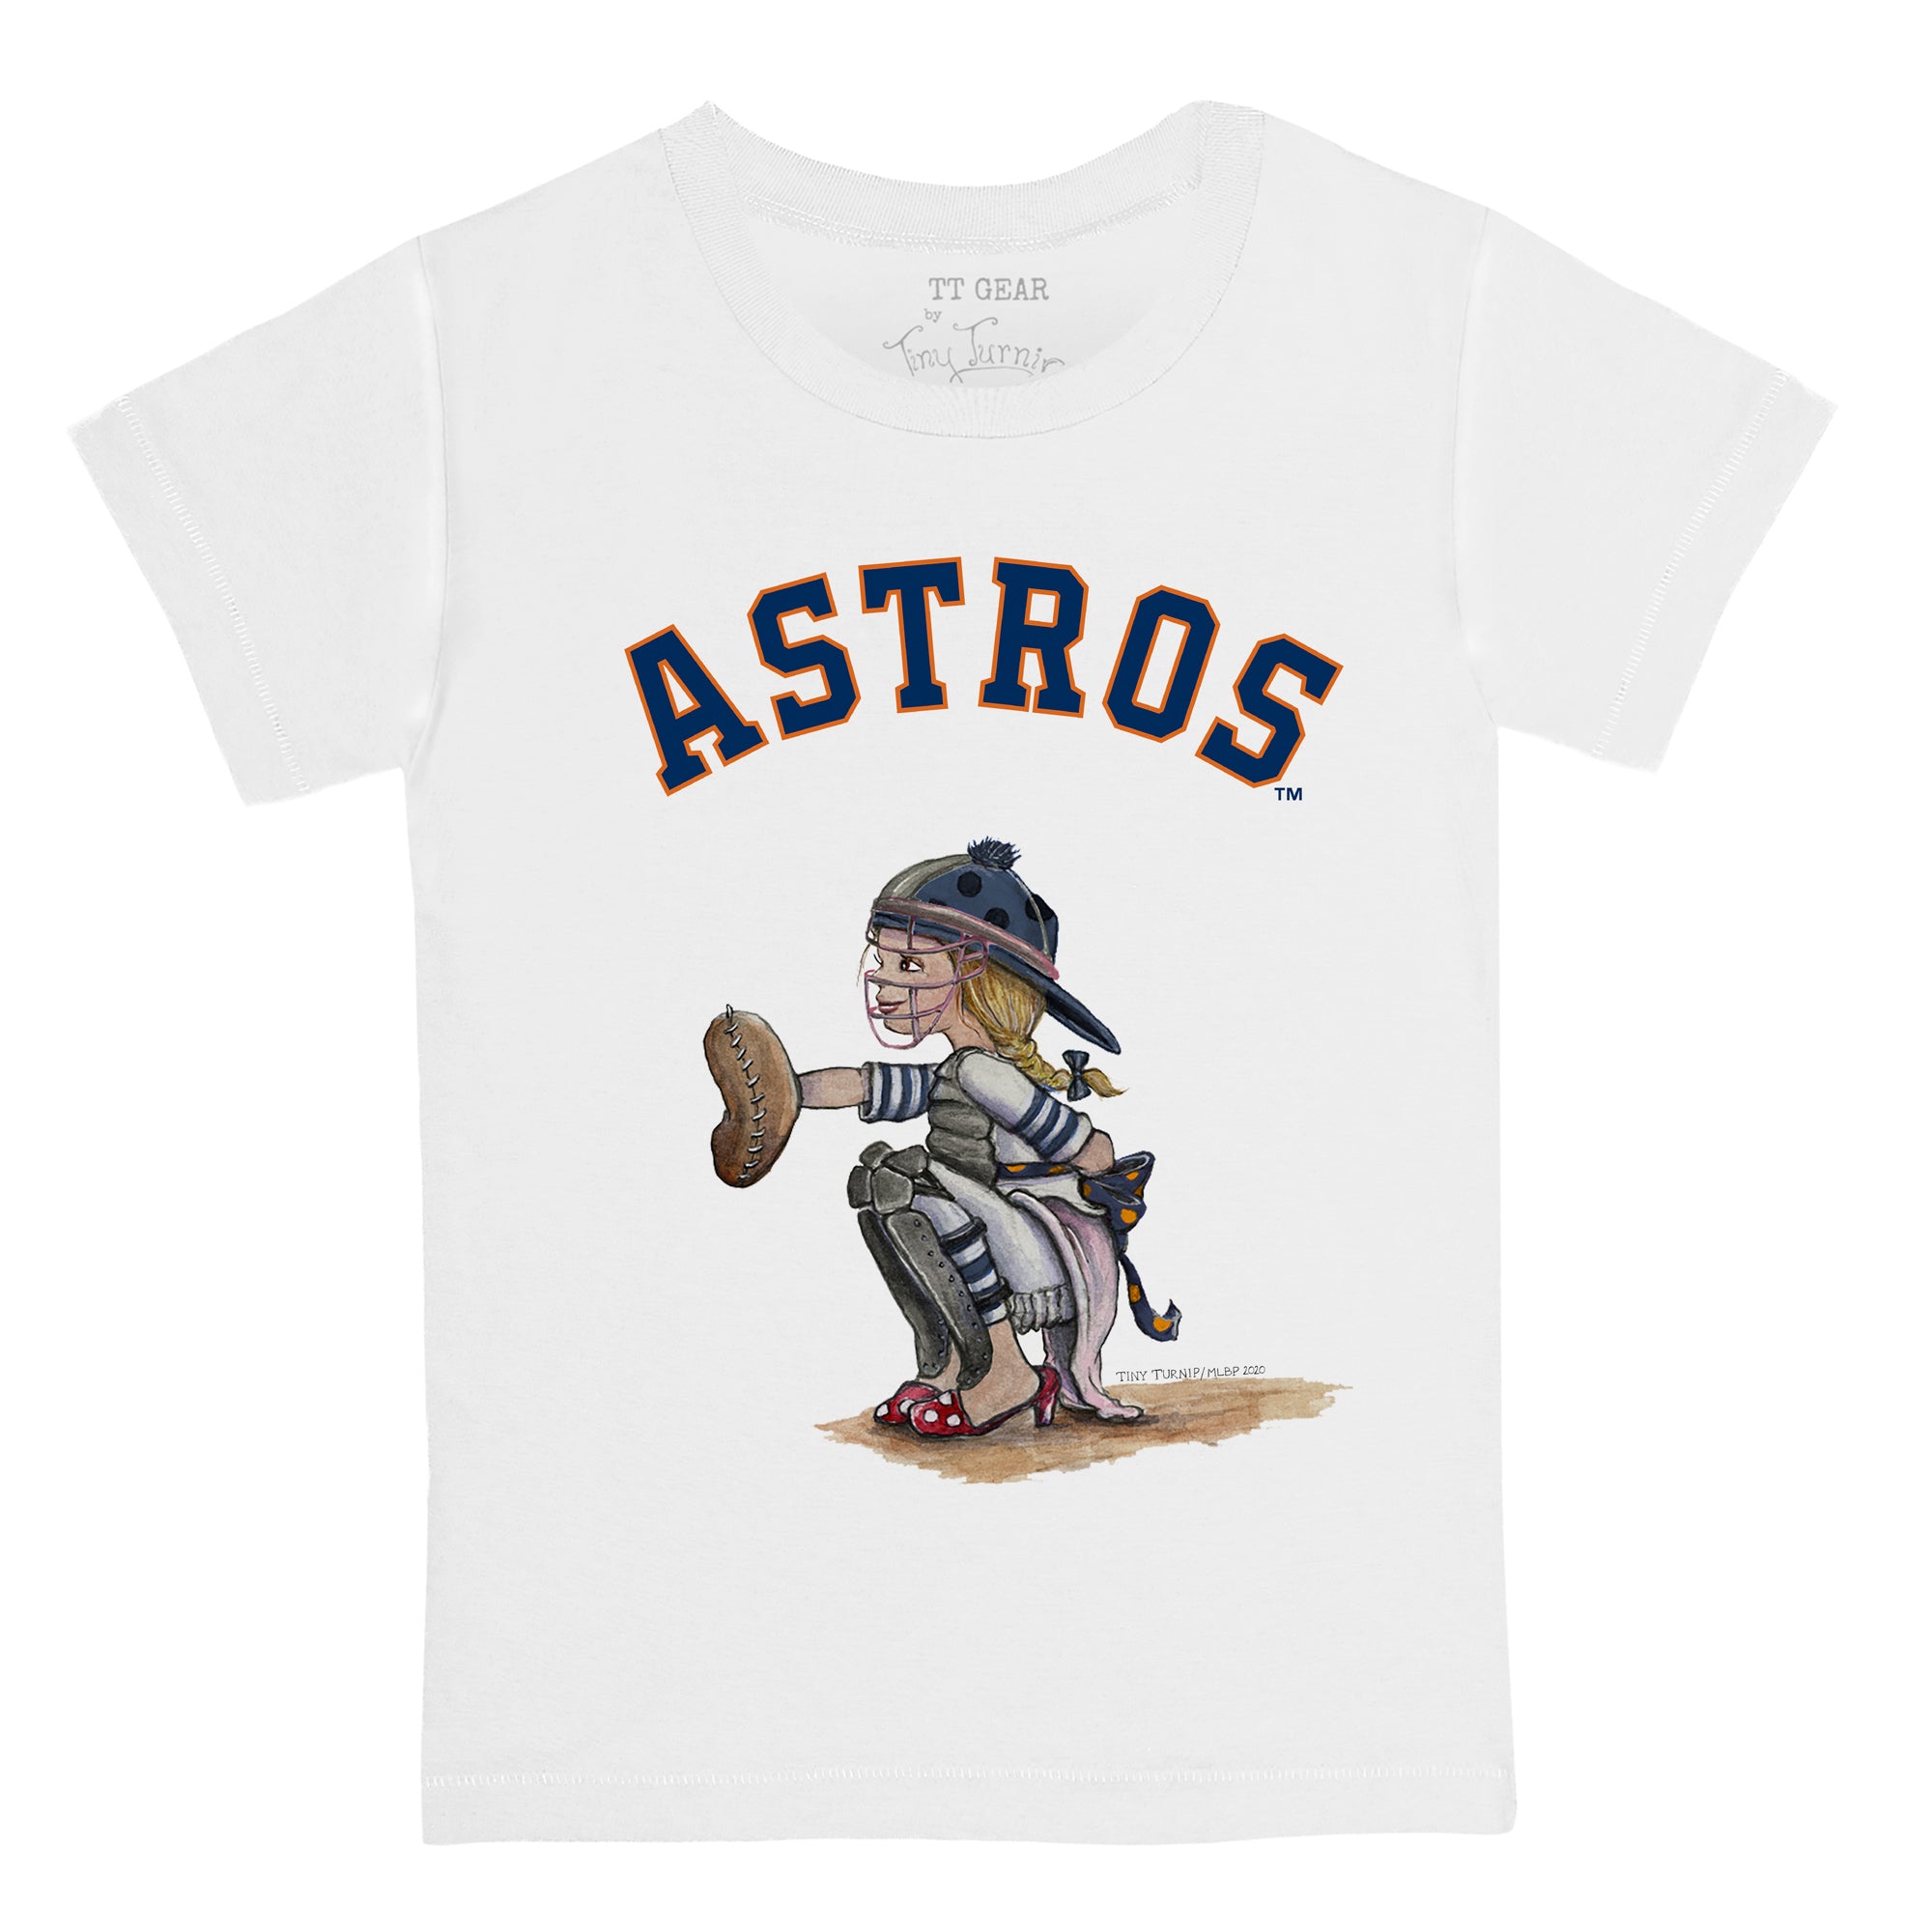 Toddler Tiny Turnip White Houston Astros Baseball Bow T-Shirt Size: 2T